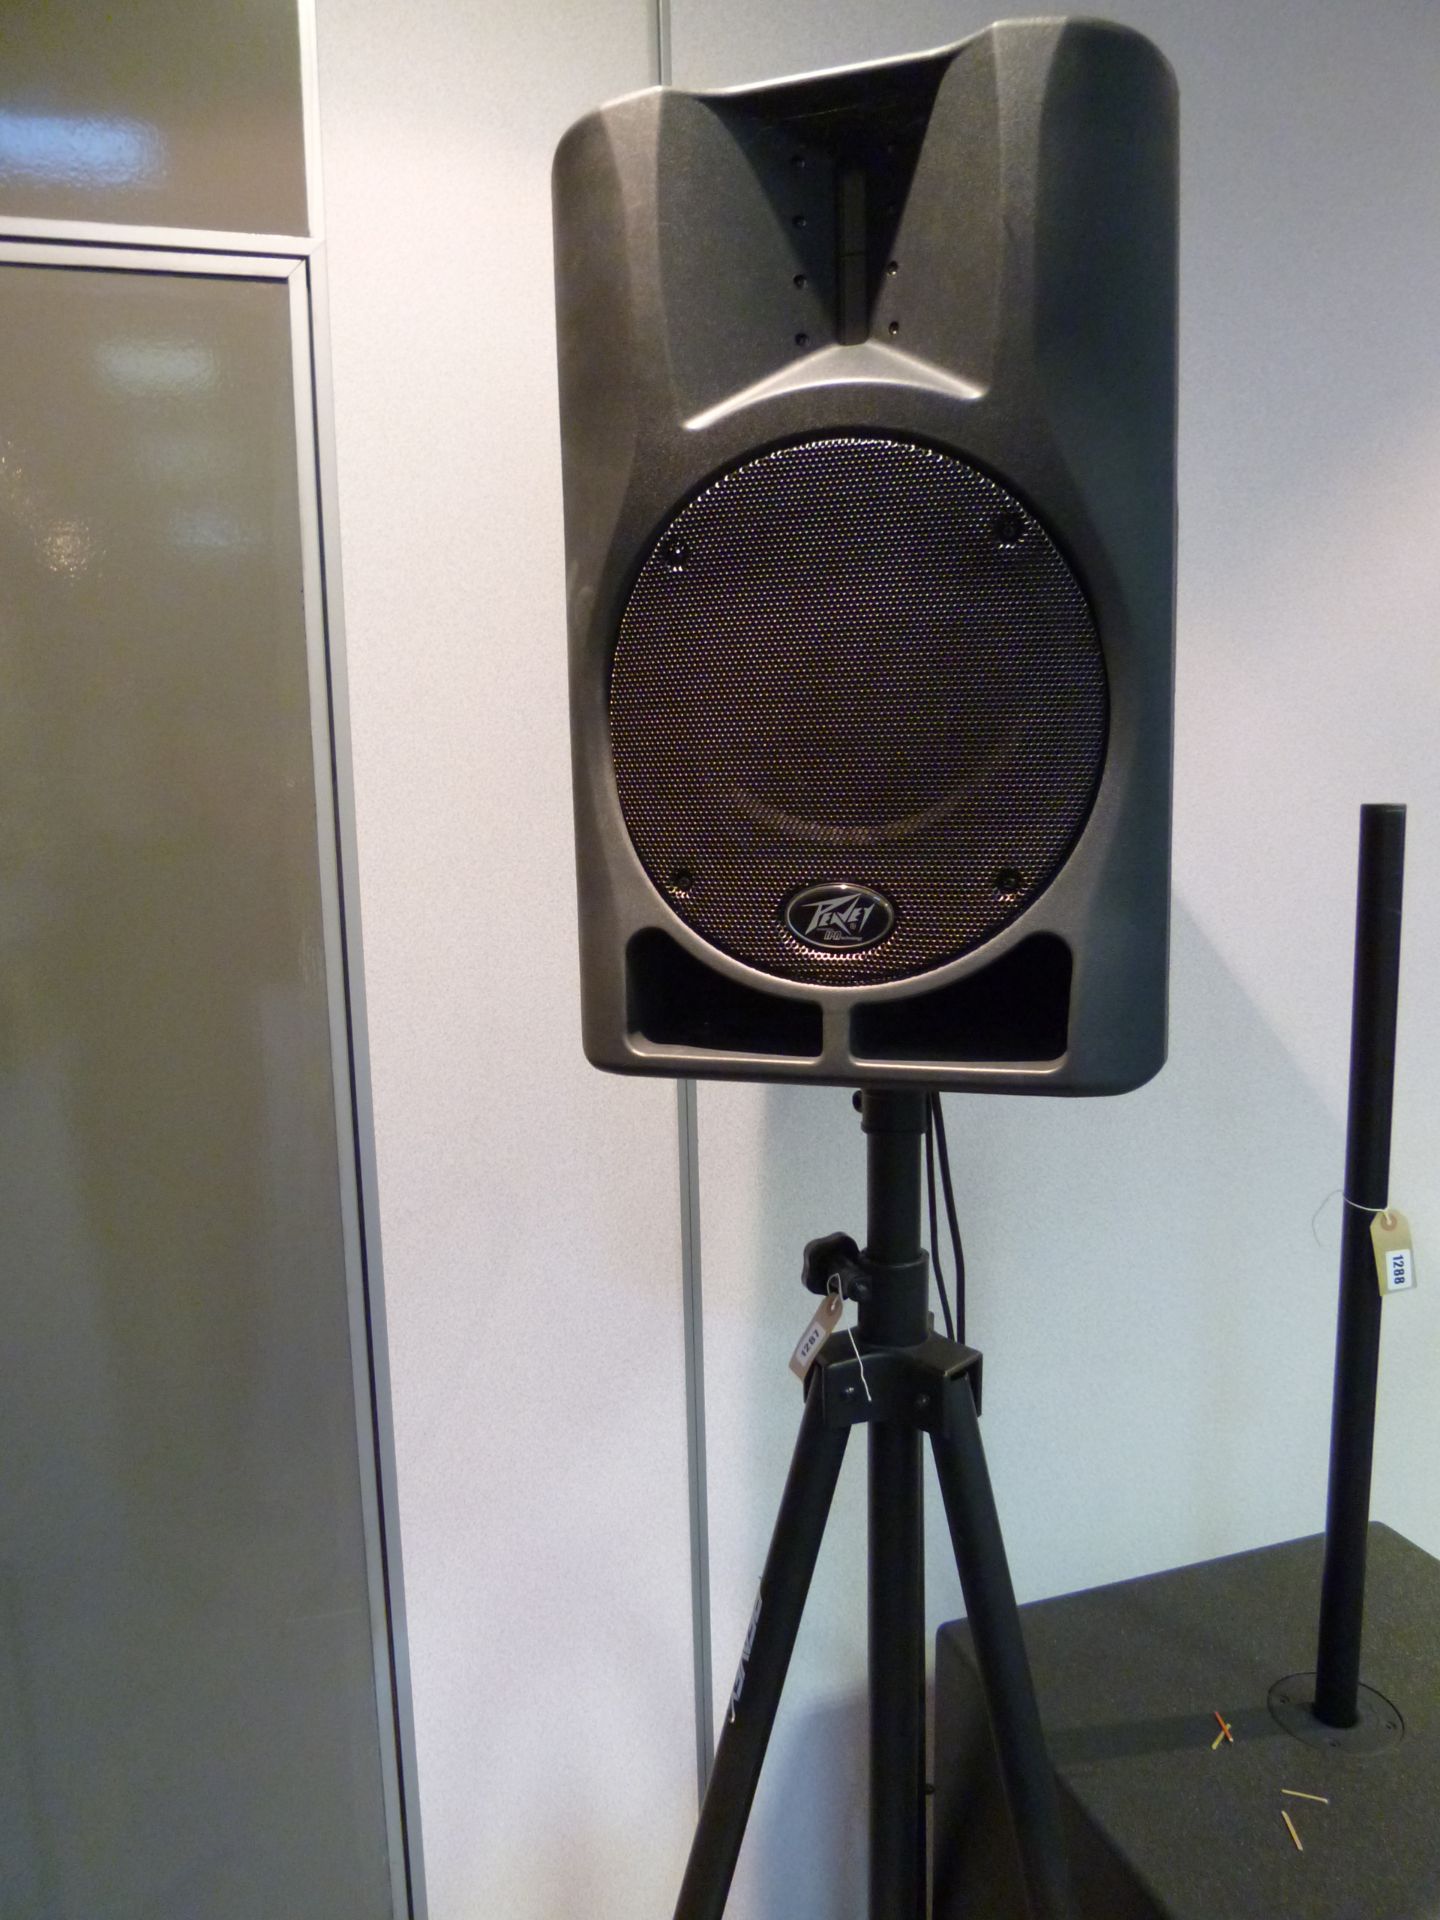 Peavey Impulse 1200 PA speaker on stand